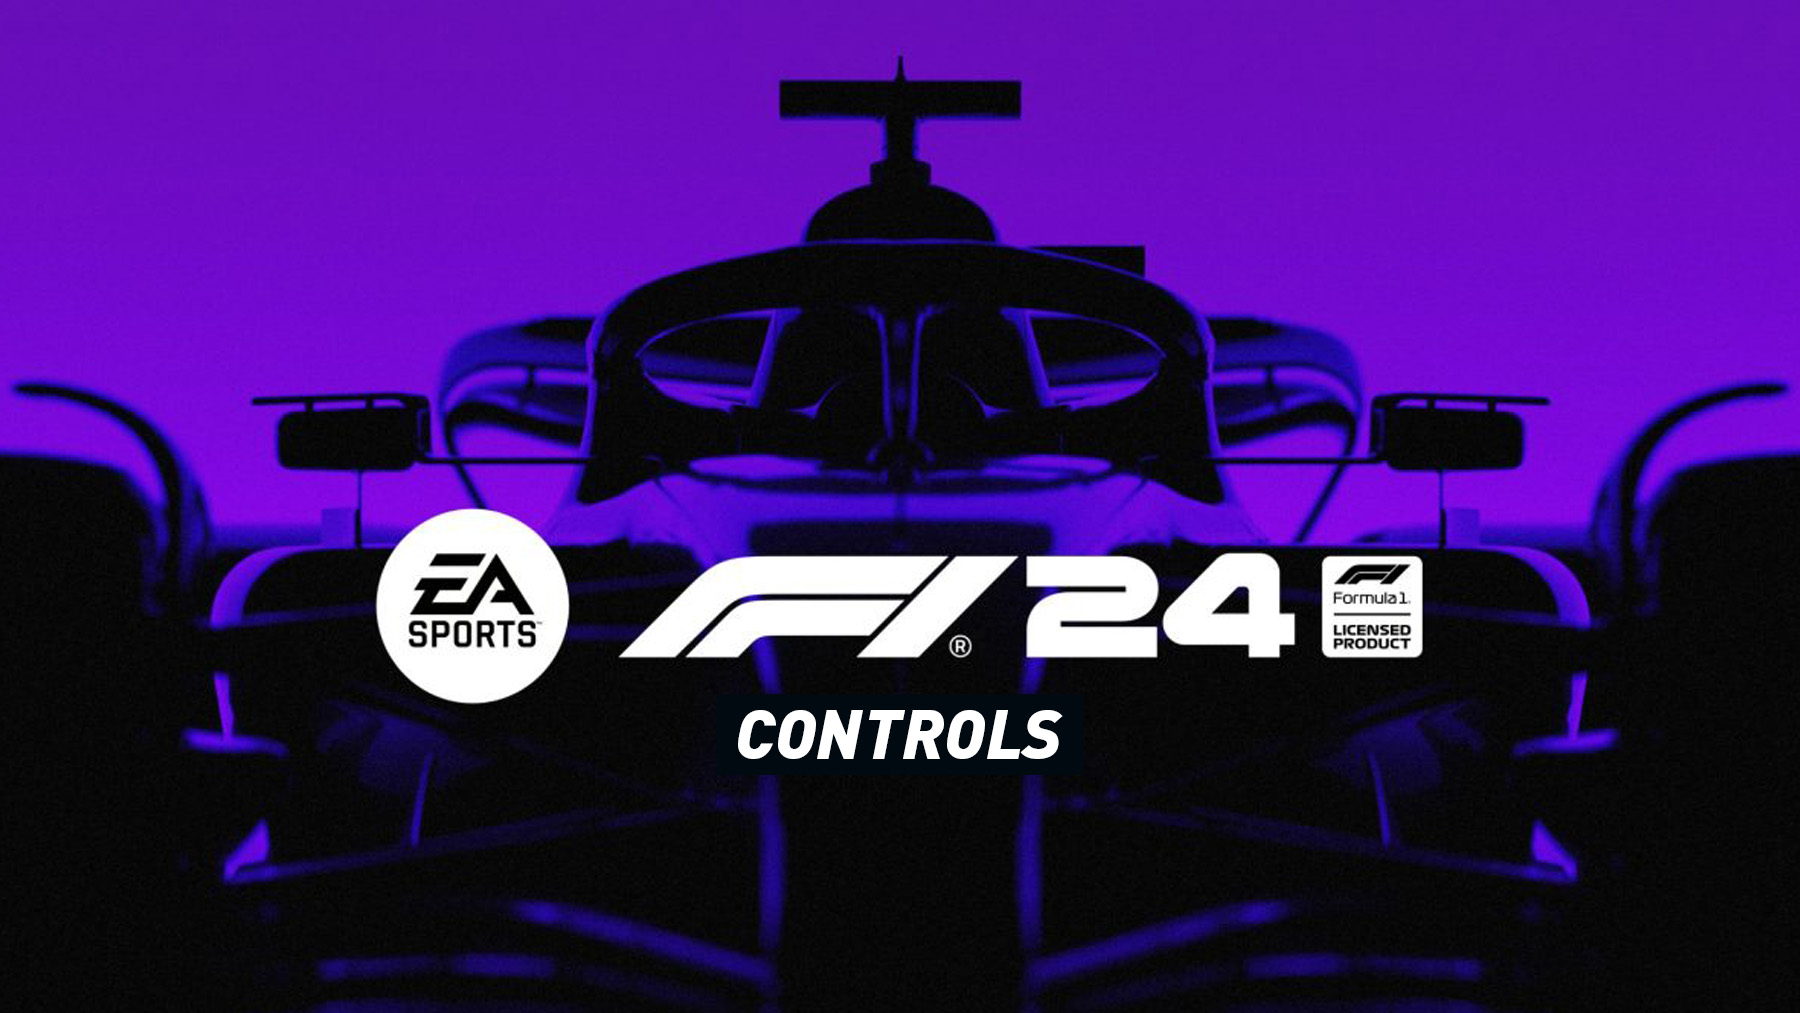 F1 24 – Controls